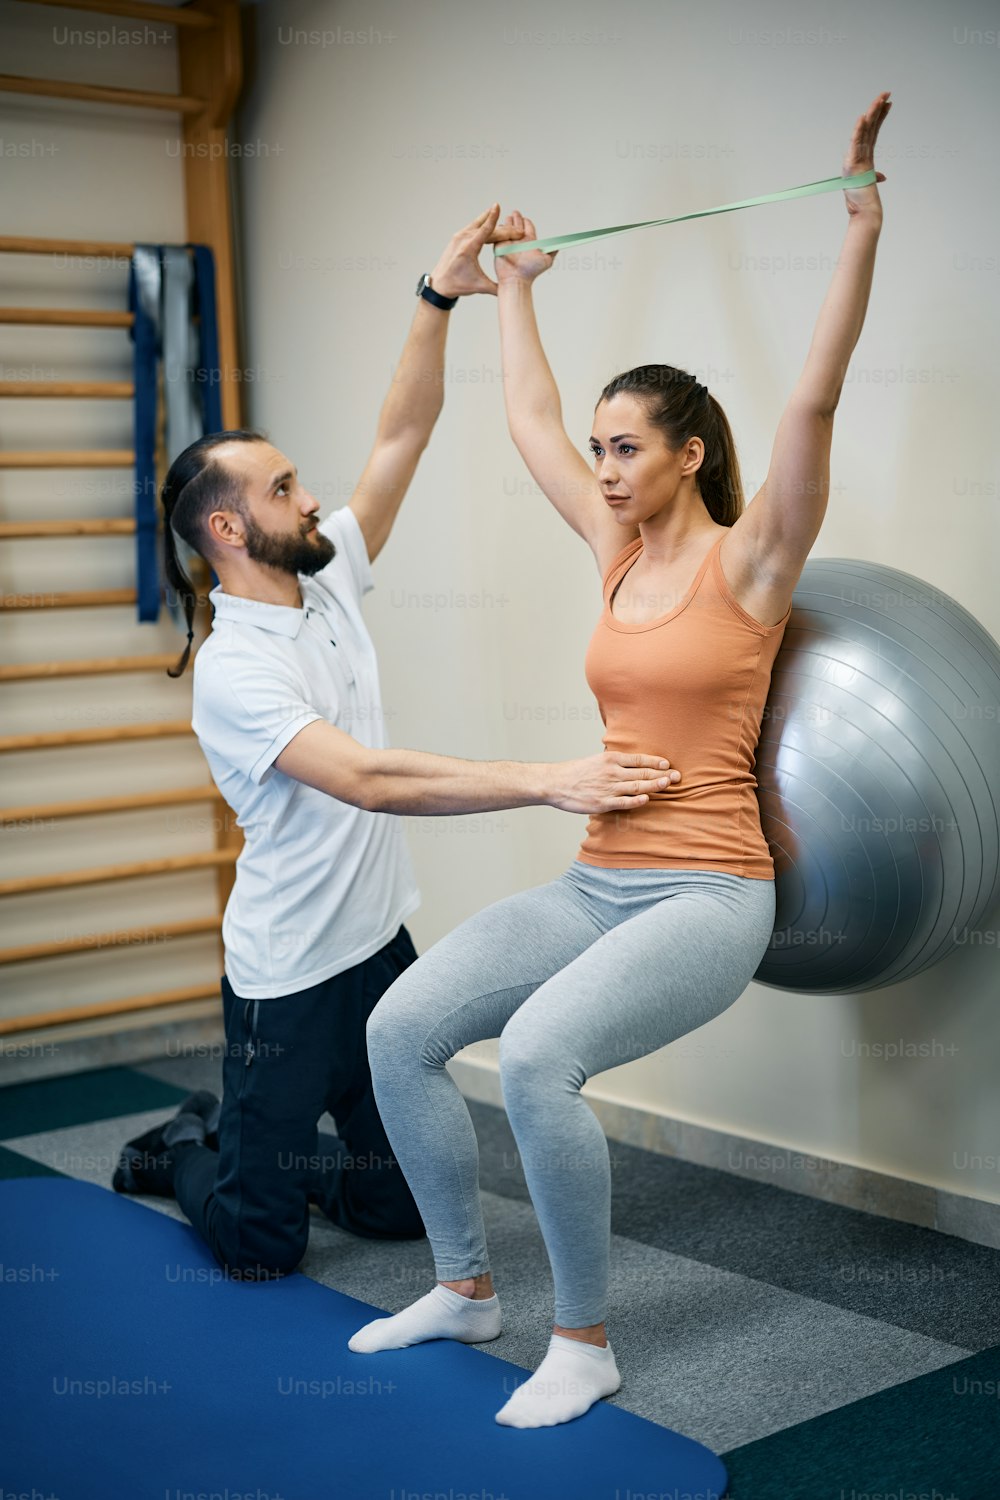 Fisioterapeuta que auxilia jovem esportista que está se exercitando com bola de fitness e banda de resistência durante o tratamento de fisioterapia no health club.